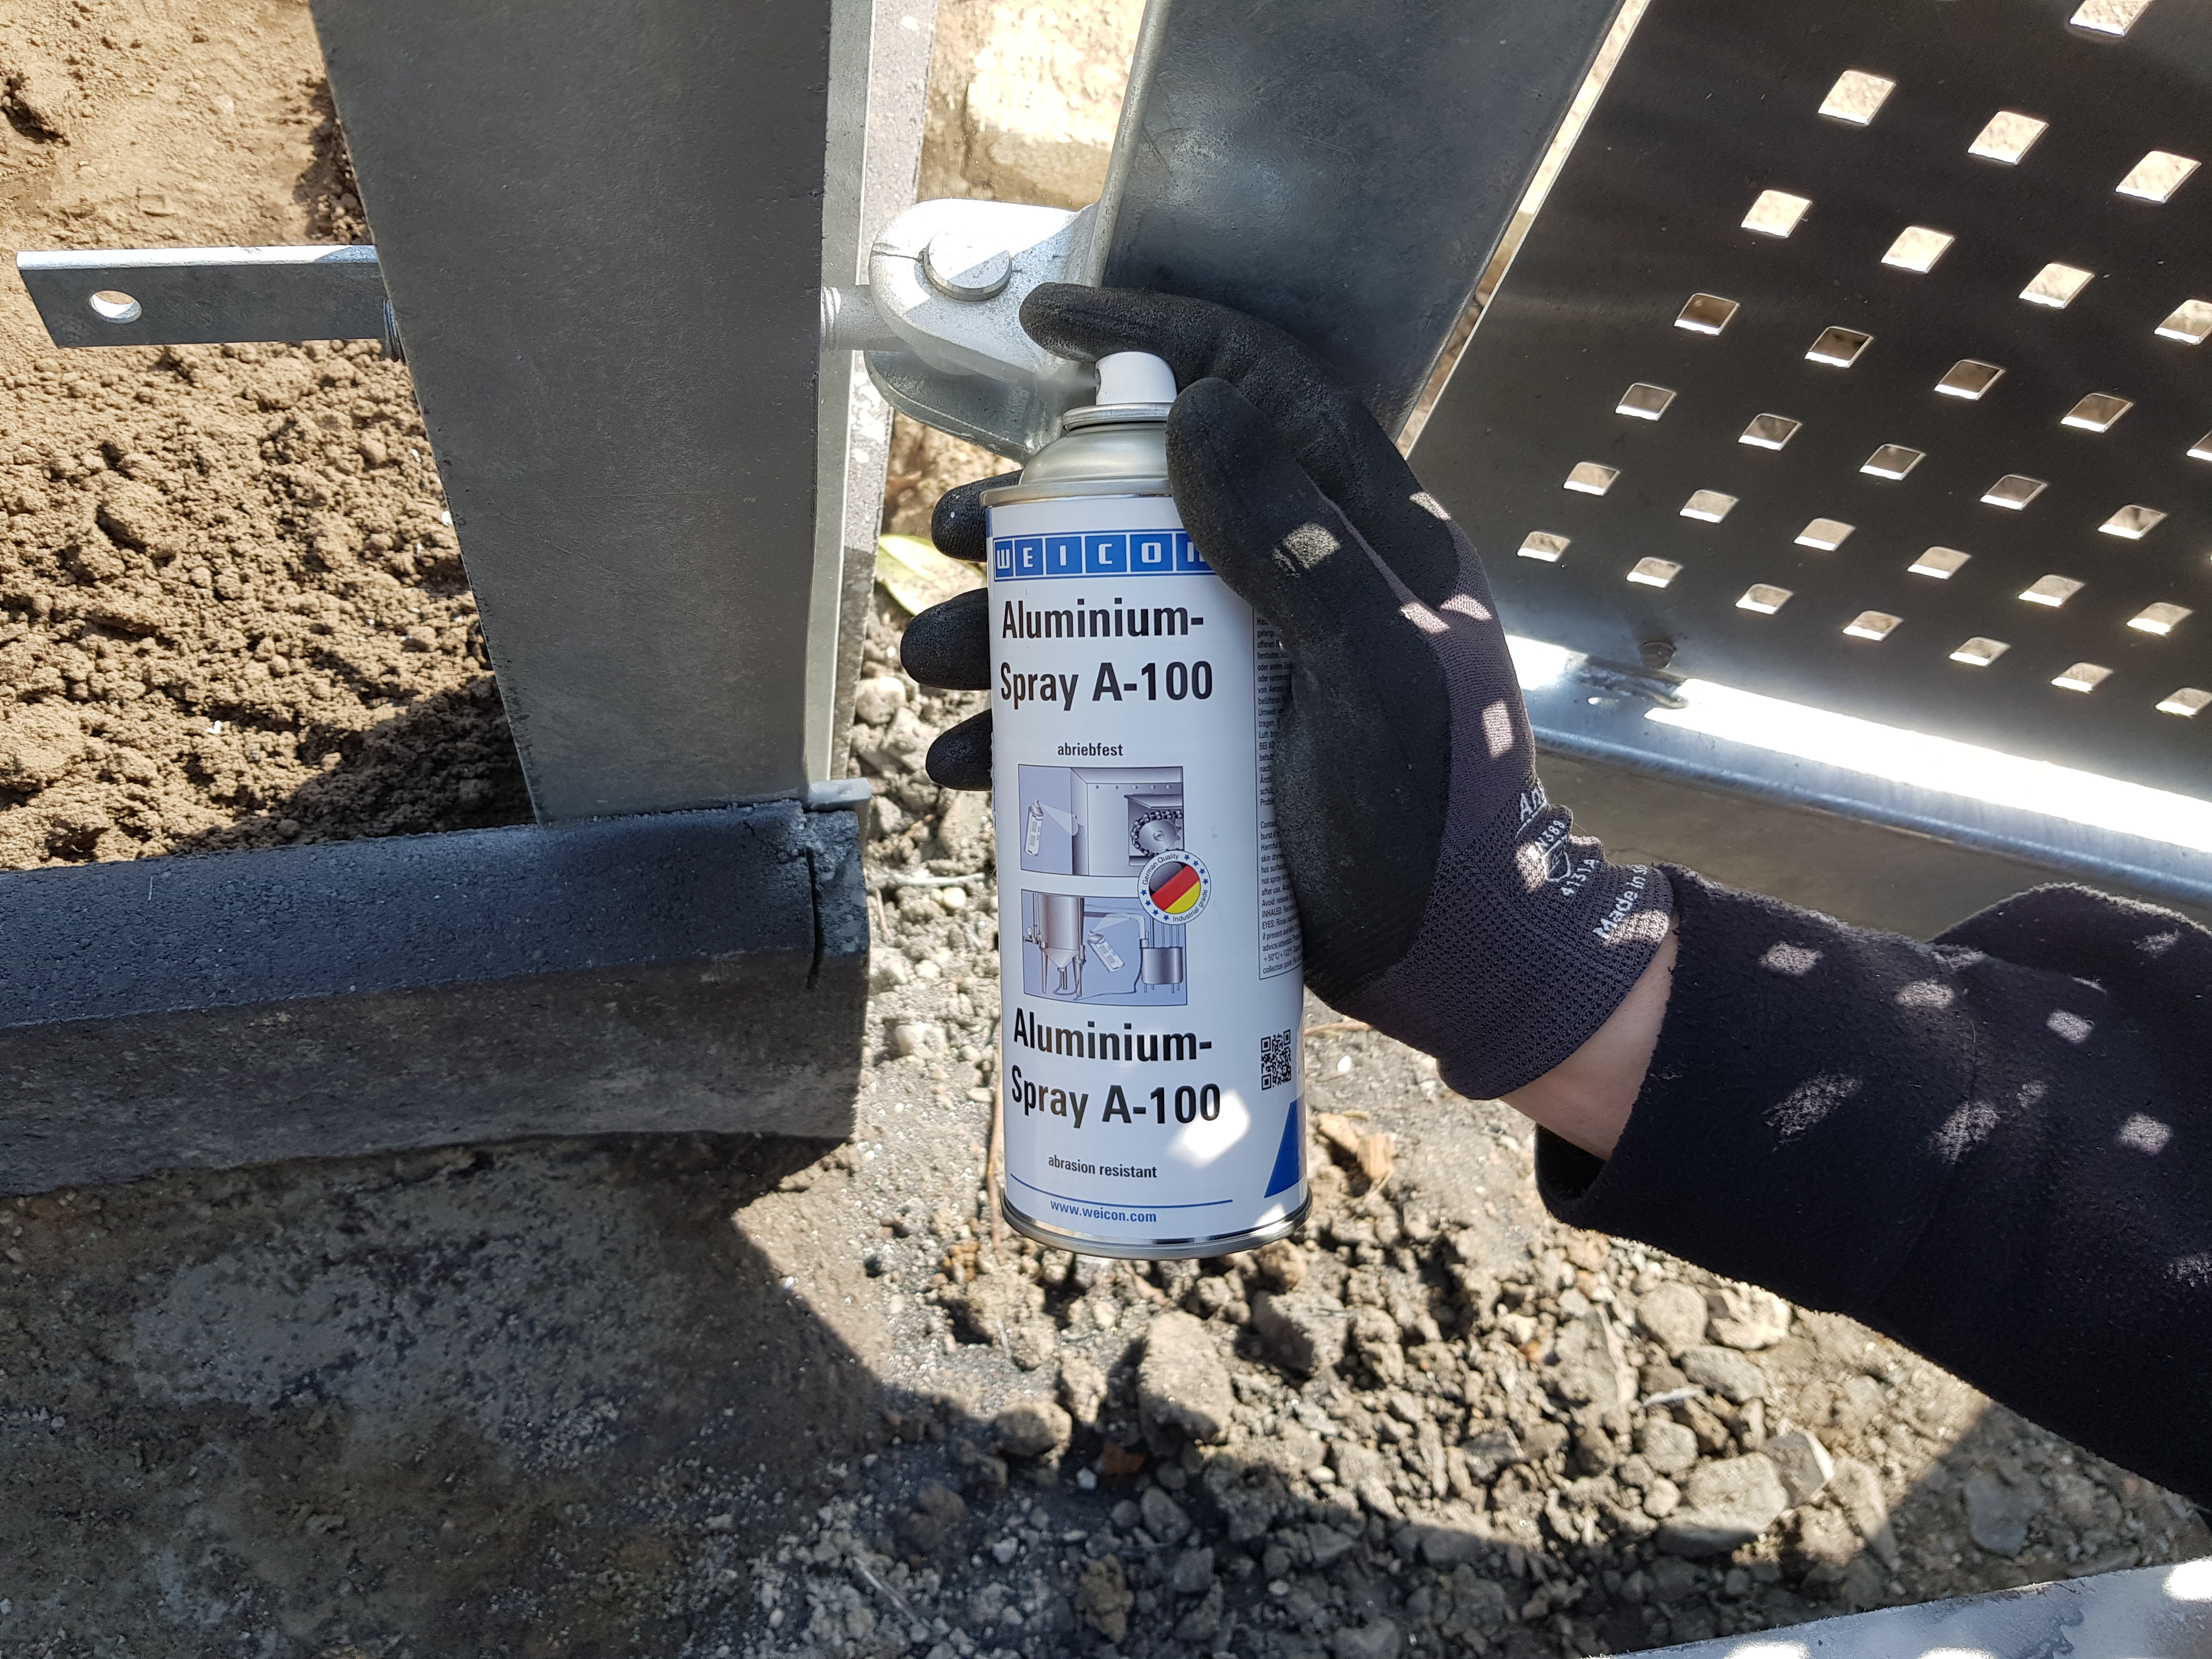 Spray Aluminio A-100 resistente a la abrasión | protección resistente a la abrasión contra el óxido y la corrosión